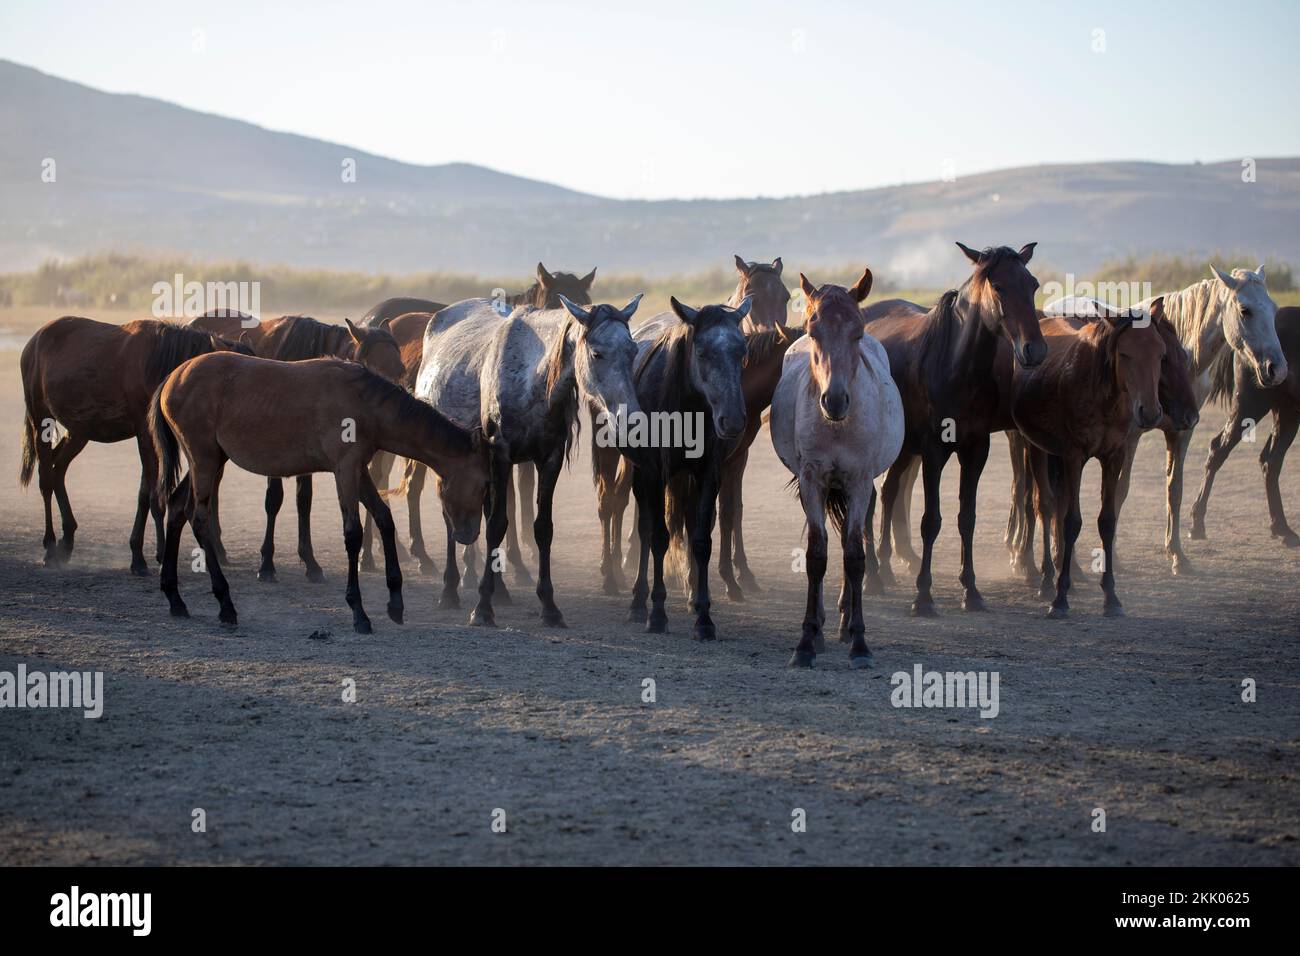 Herd of Wild Horses Running in Dust Stock Photo